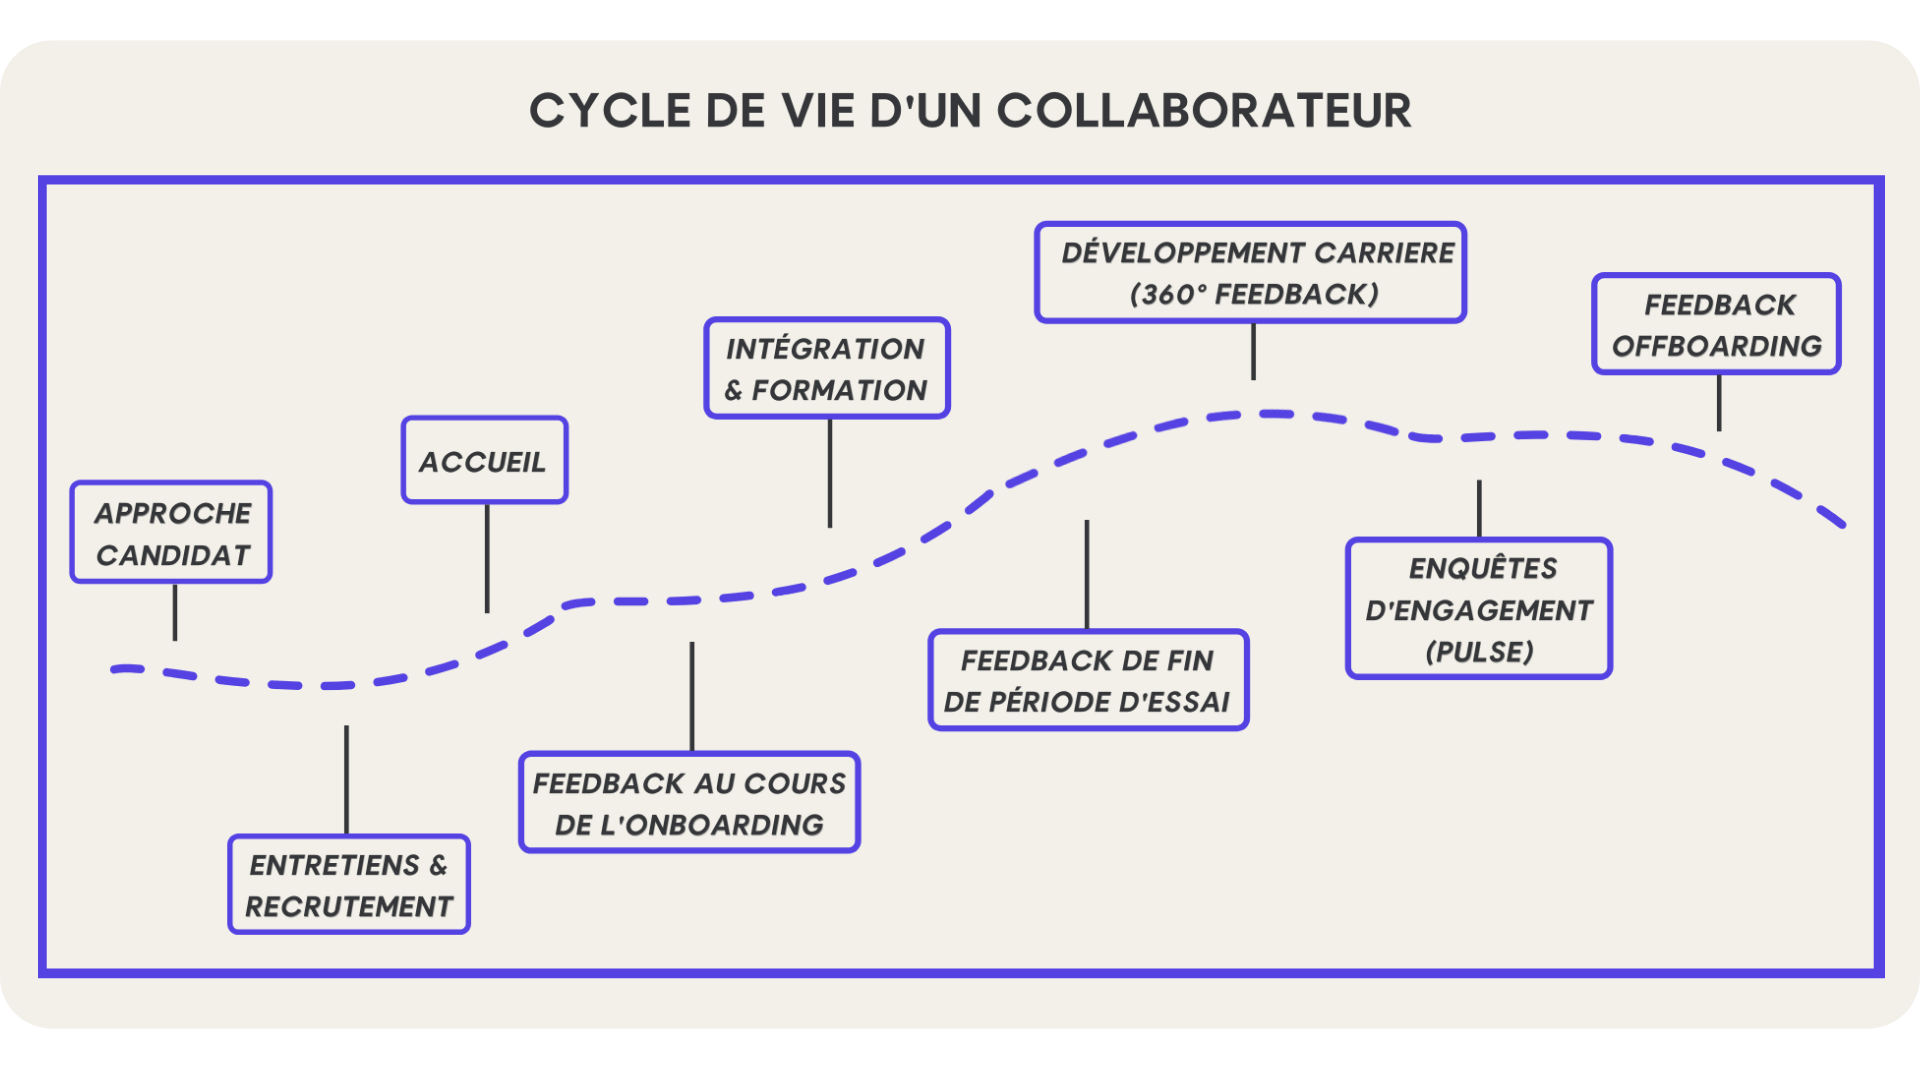 Cycle de vie dun collaborateur : les 9 étapes